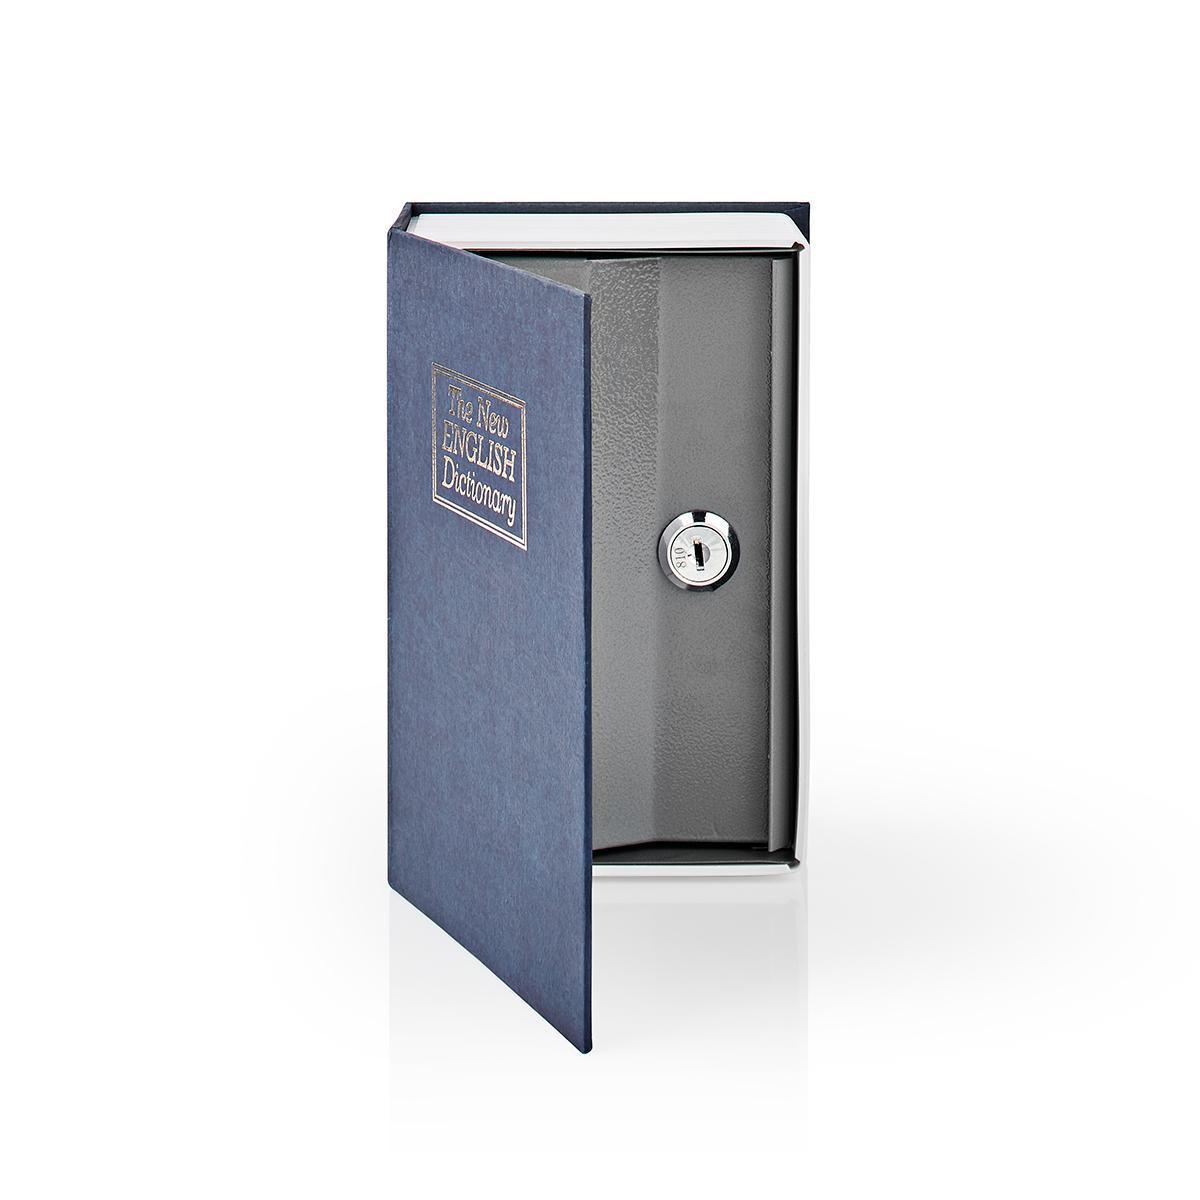 Nedis Cassaforte a libro | Foro per la chiave | Interno | Piccolo | Volume interno: 0,86 l | 2 chiavi incluse | Blu / Argento.  